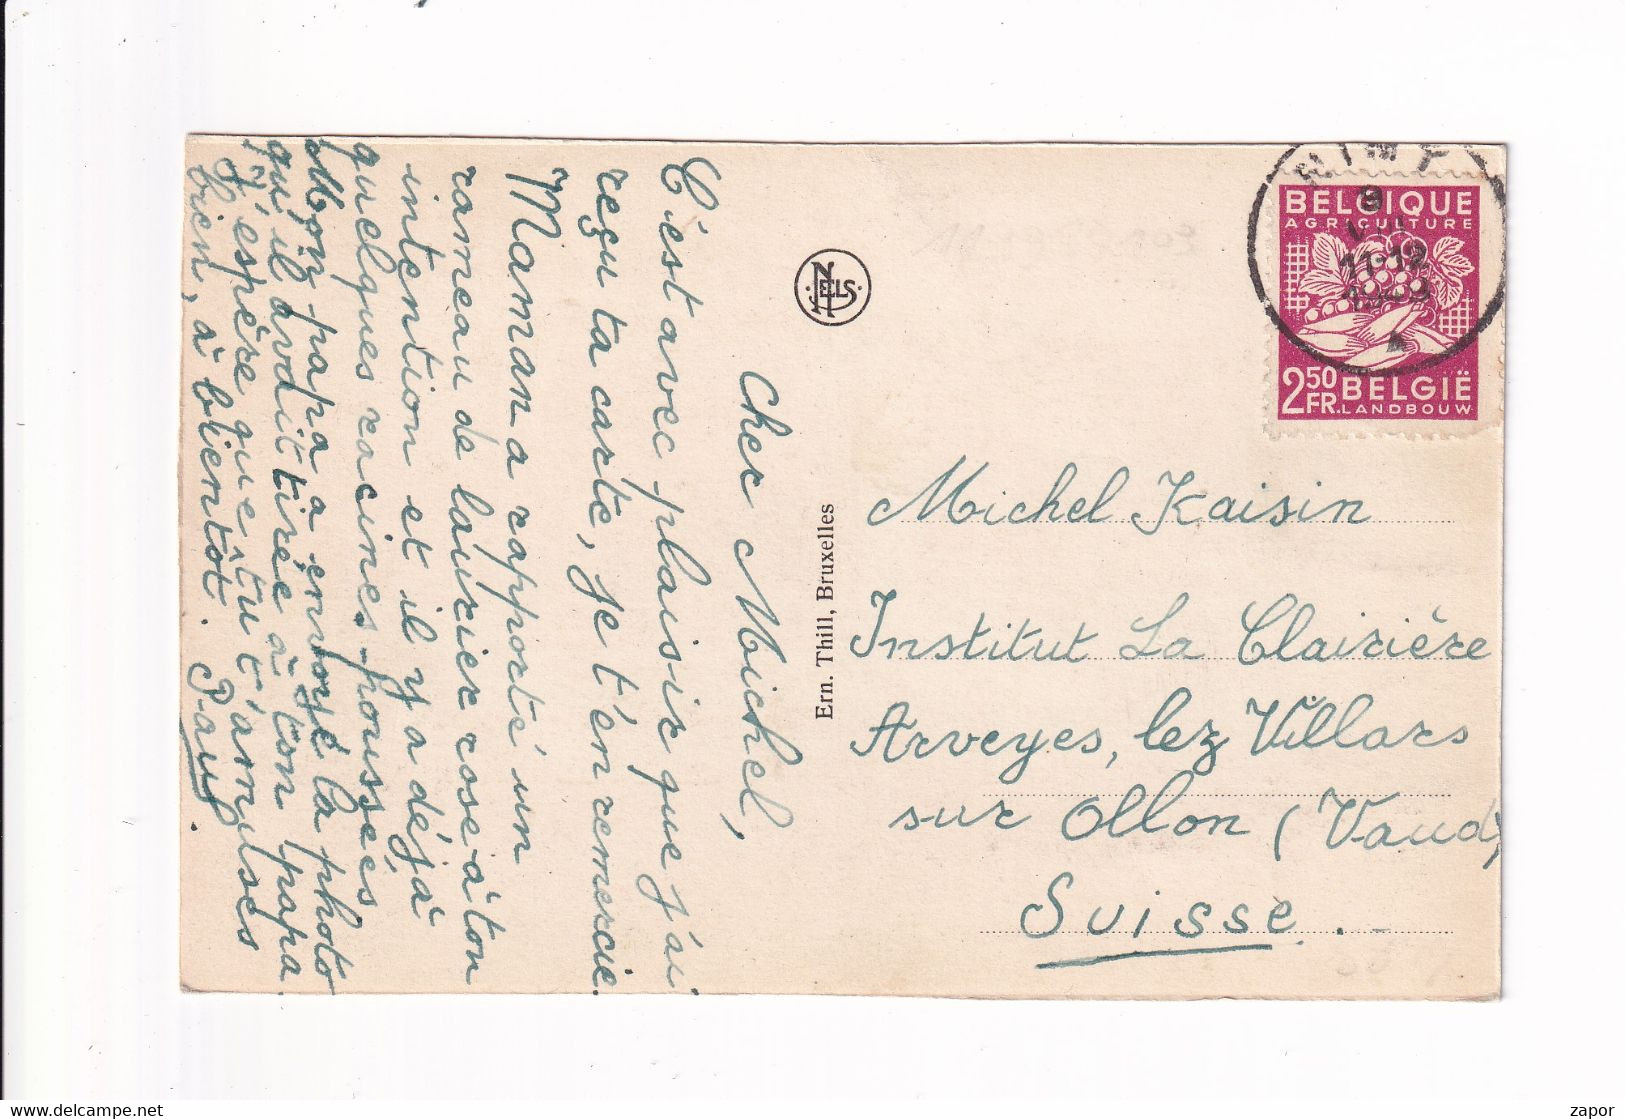 Postkaart / Carte Postale - Belgische Uitvoer 1948 769 / Mons - Grand' Place Naar Arveyes Suisse - 1948 Exportation